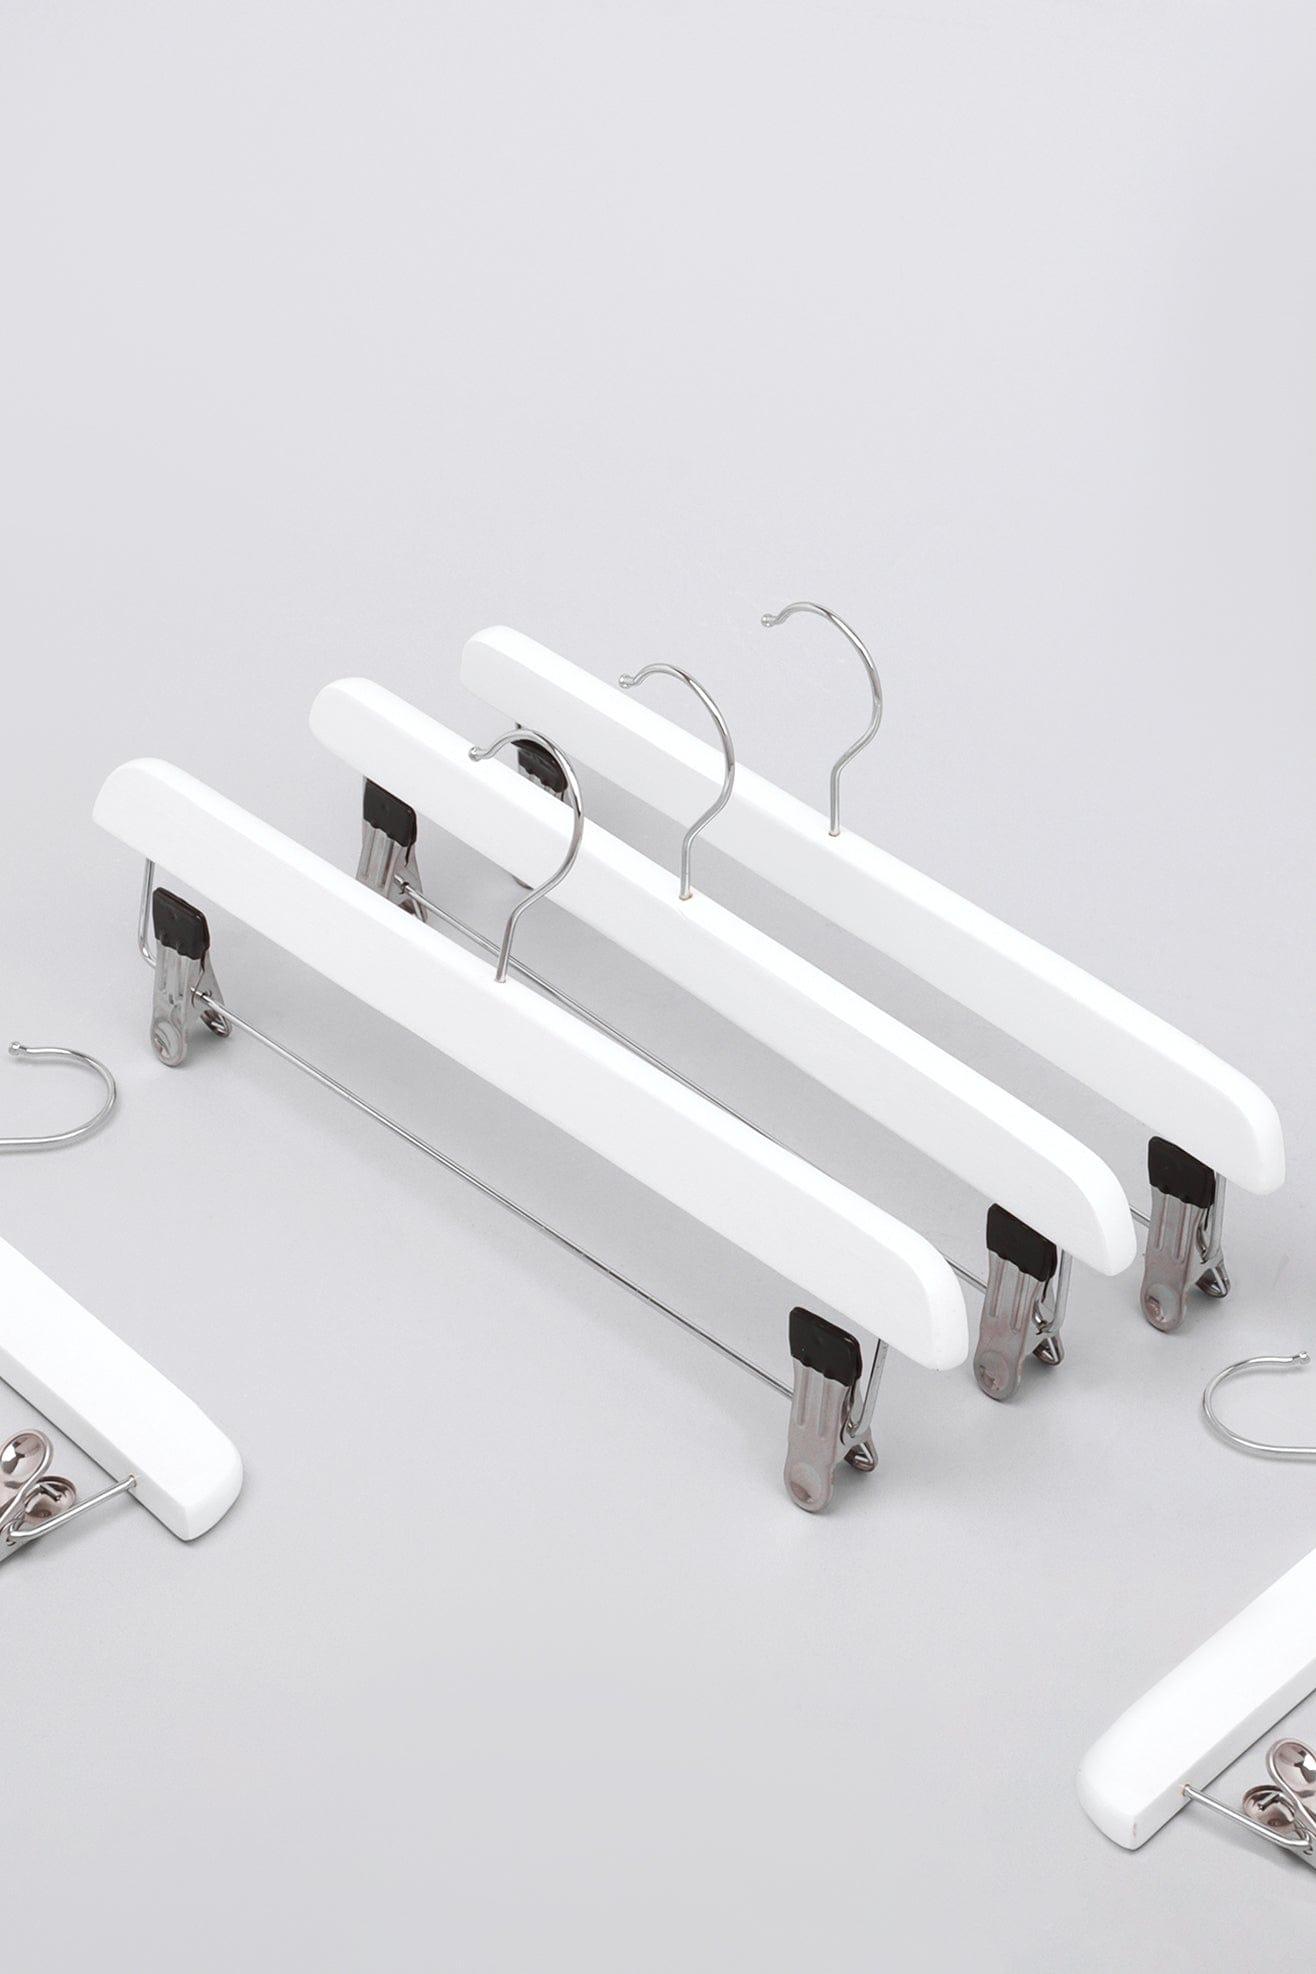 G Decor Hangers Set of 5 White Set of 5 White Wooden Garment Hangers Chrome Clips